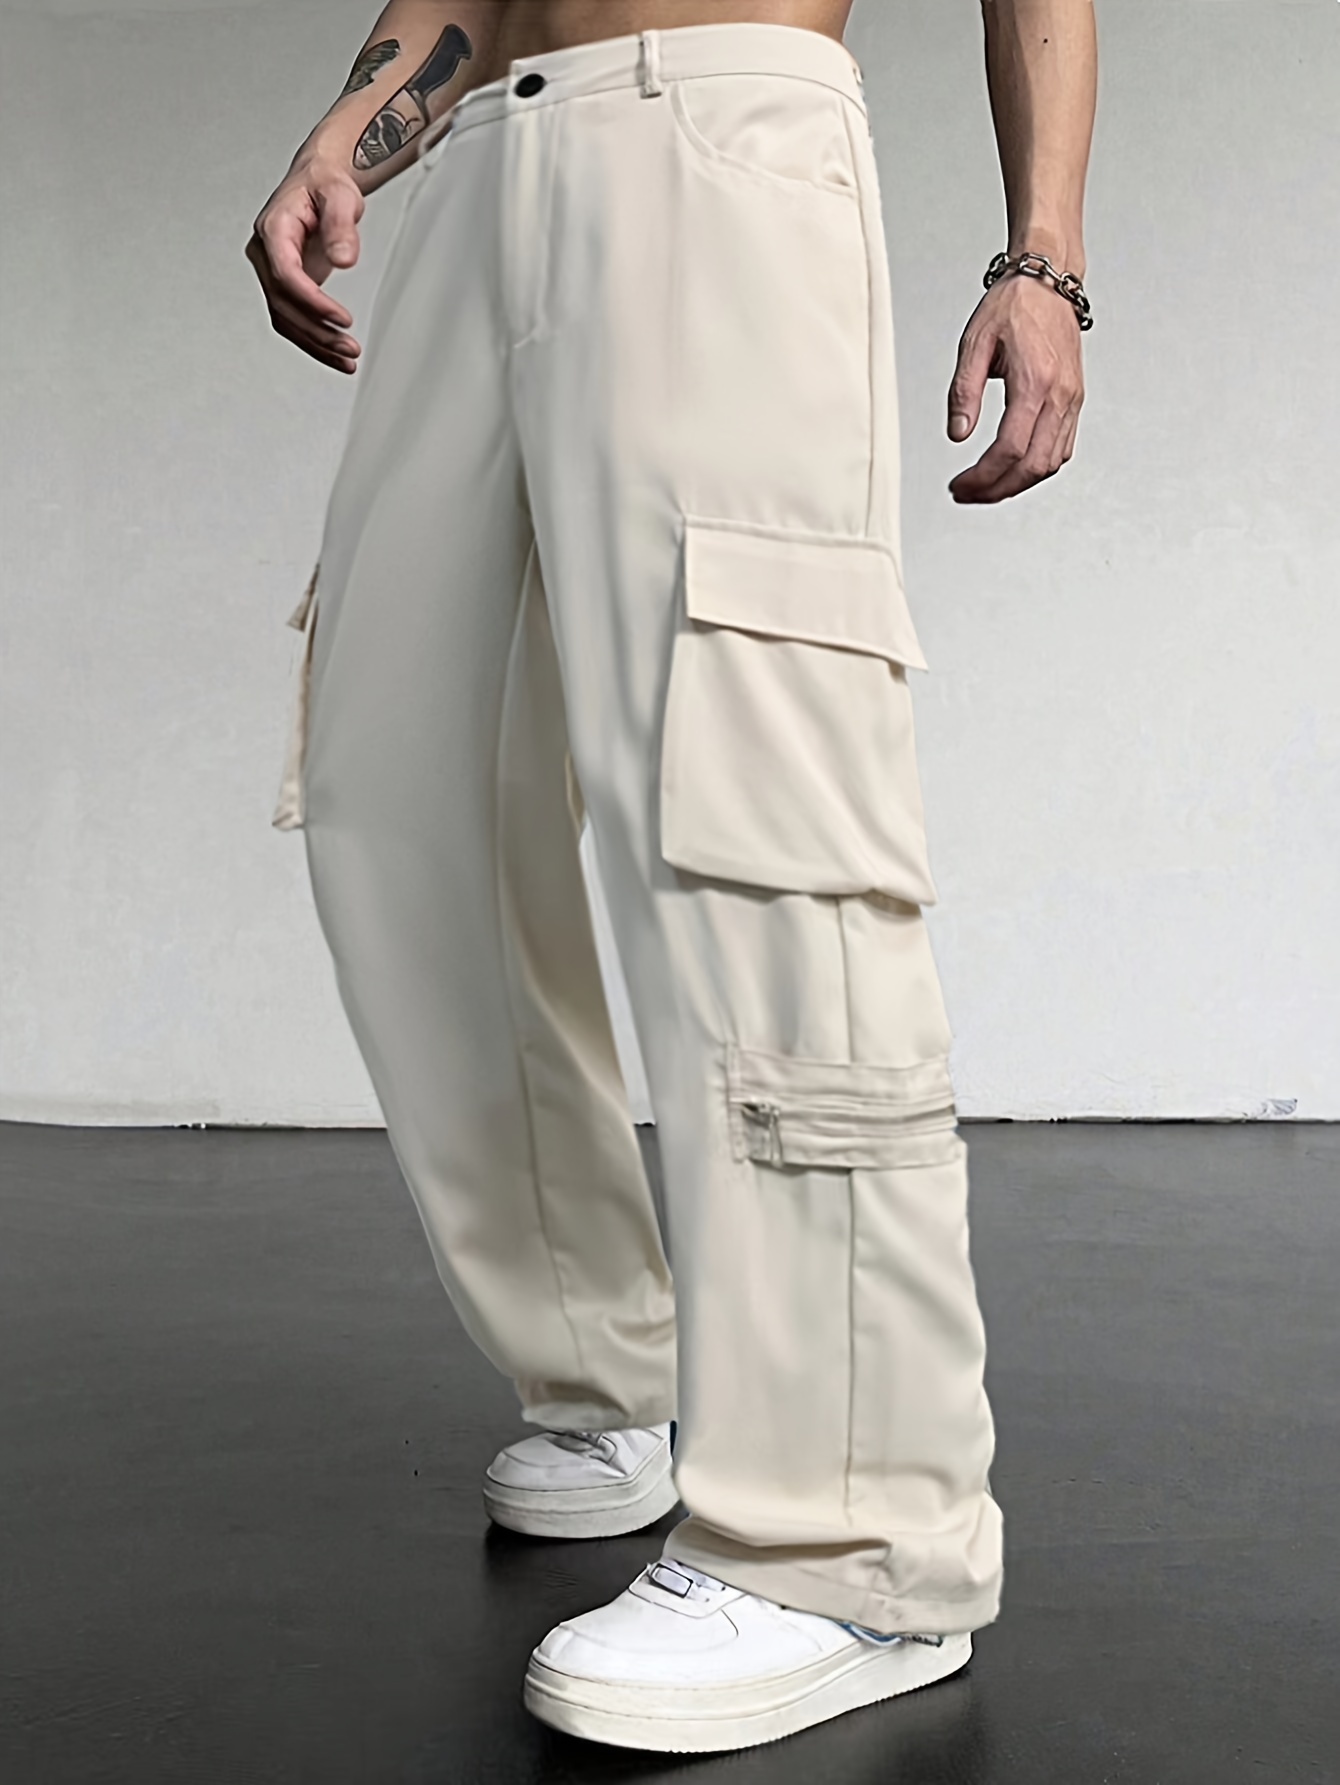 Anko Kmart Mens Size 3XL Sand Long Cargo Work Pants Lightweight Fabric